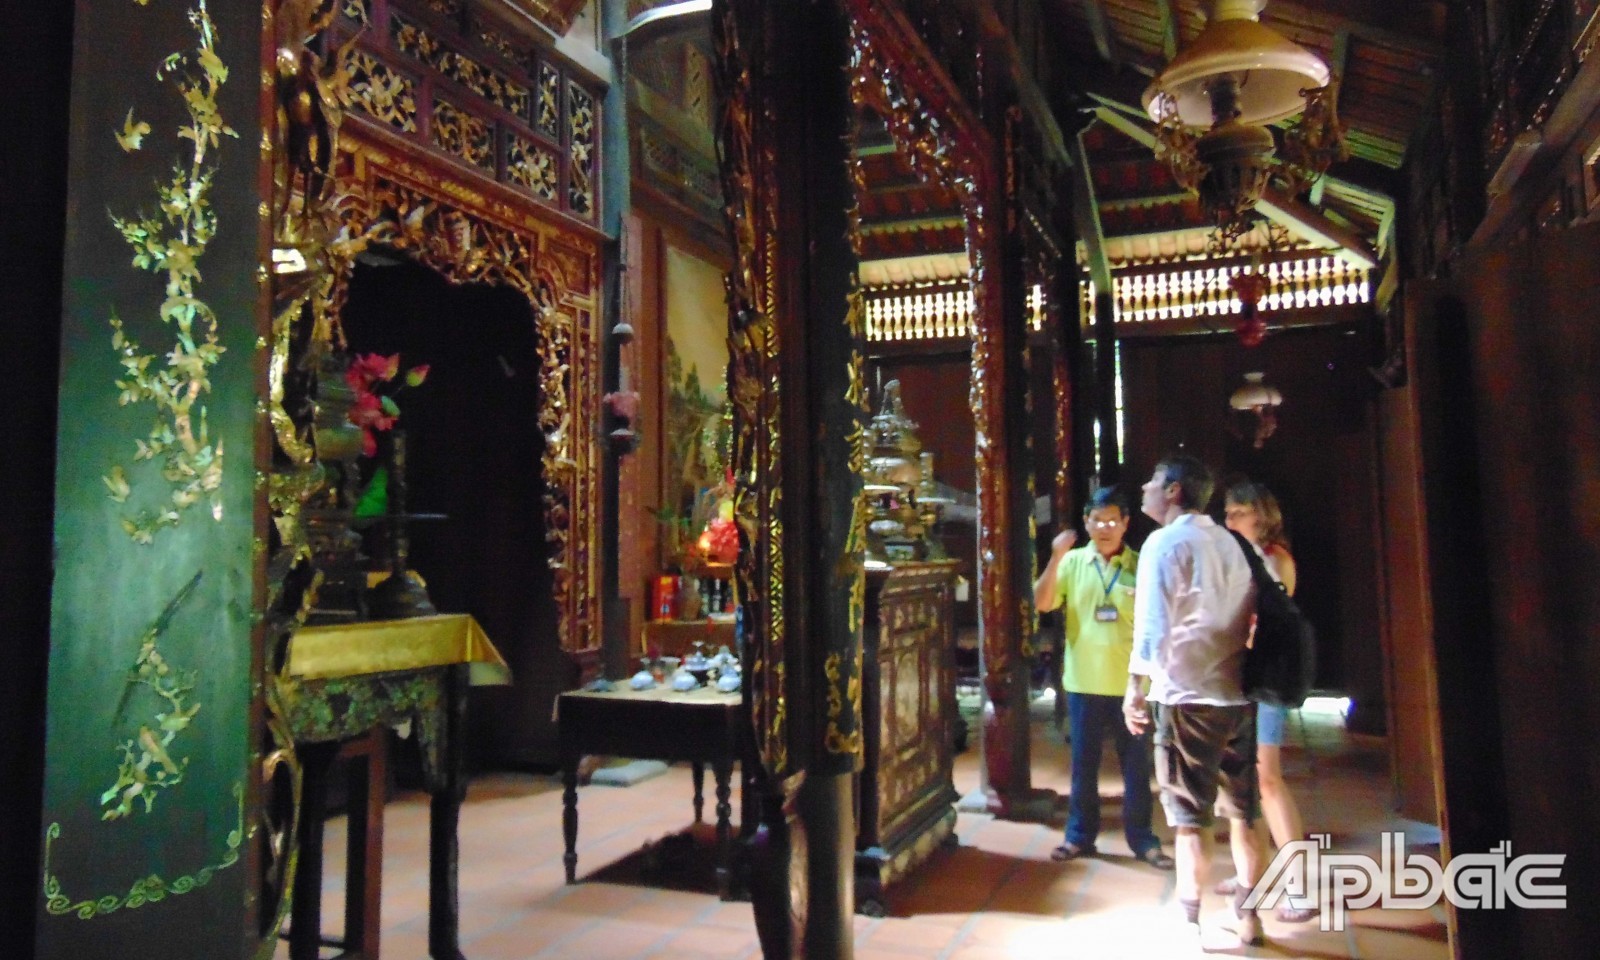 Bên trong nhà cổ của ông Kiệt, các hoa văn chạm khắc trên các bộ kèo, cột, xiên và vách rất công phu theo kiểu nhà xưa của Nam bộ, luôn gây sự chú ý đối với du khách, nhất là khách nước ngoài.